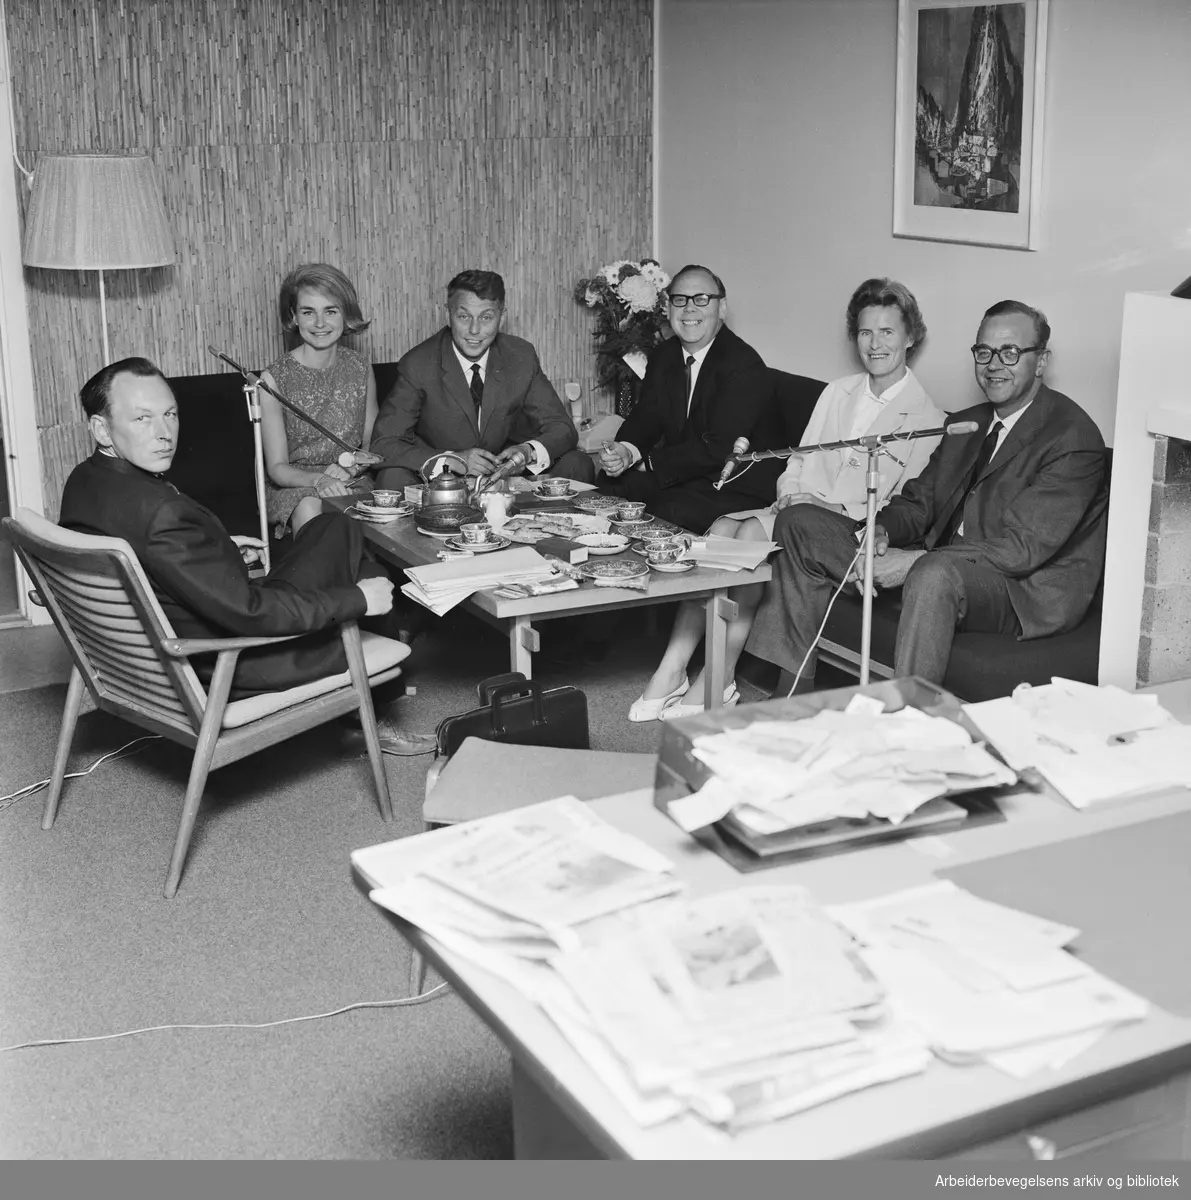 Debattprogrammet Fargeradioen - privat debattforum i eteren. Fra venstre: Kaare Hansen (Handel og Kontor), N.N. Torsby, programleder Arnfinn B. Storkaas, fargehandler G. B. Harstad, senere justisminister Inger Louise Valle og Einar Blanck. Juni 1965.